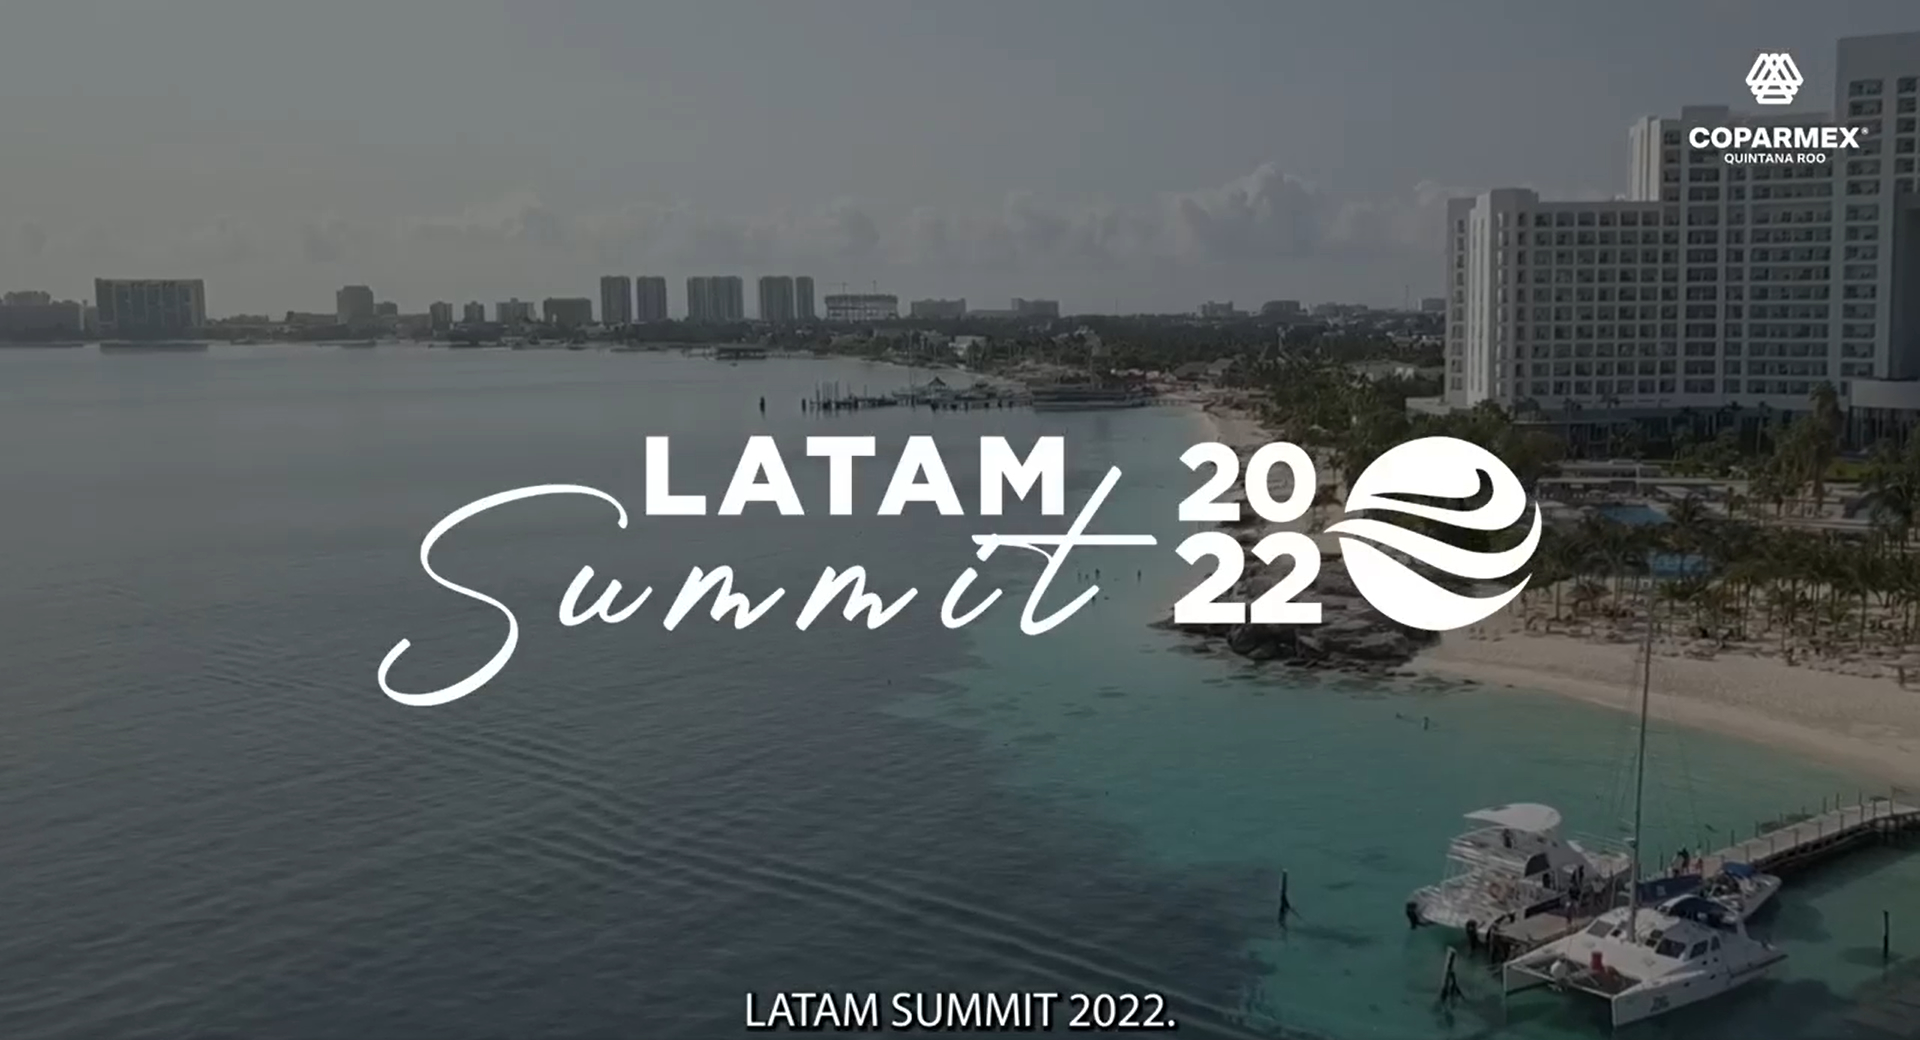 Italimpia en el Latam Summit 2022 en la Riviera Maya de la Coparmex